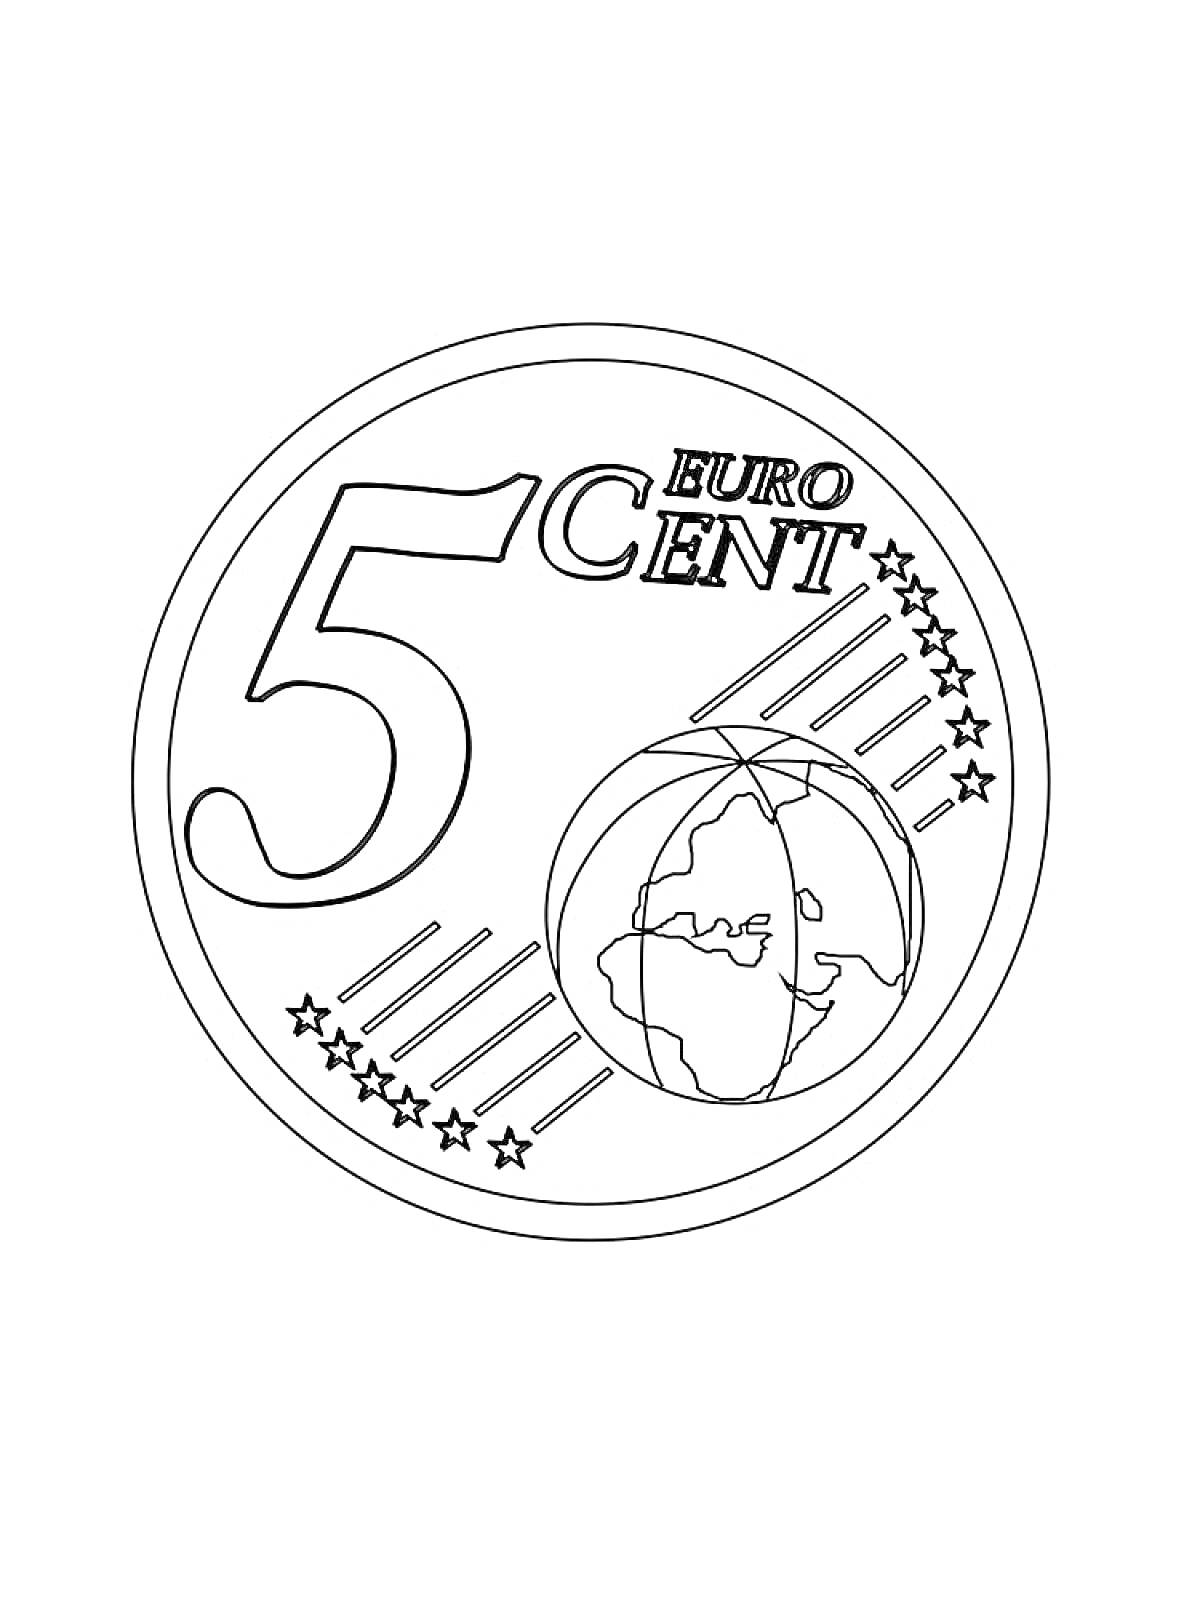 Монета 5 евроцентов, цифра 5, текст EUR CENT, изображение карты, линии, звезды